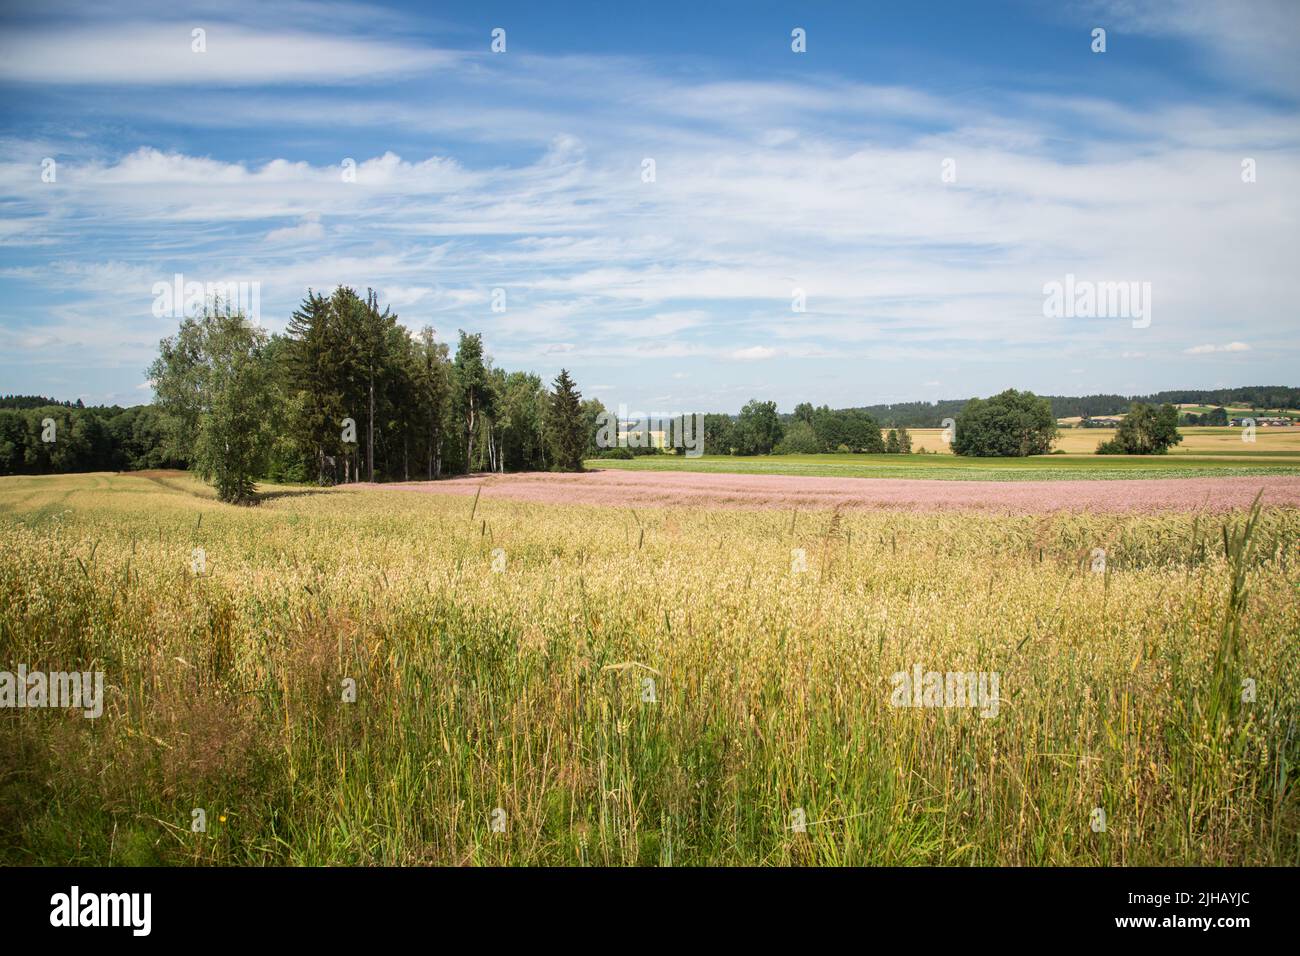 Paysage typique de Waldviertel - champs, prairies et forêt - randonnée près de Siebenlinden dans le Waldviertel, Autriche Banque D'Images